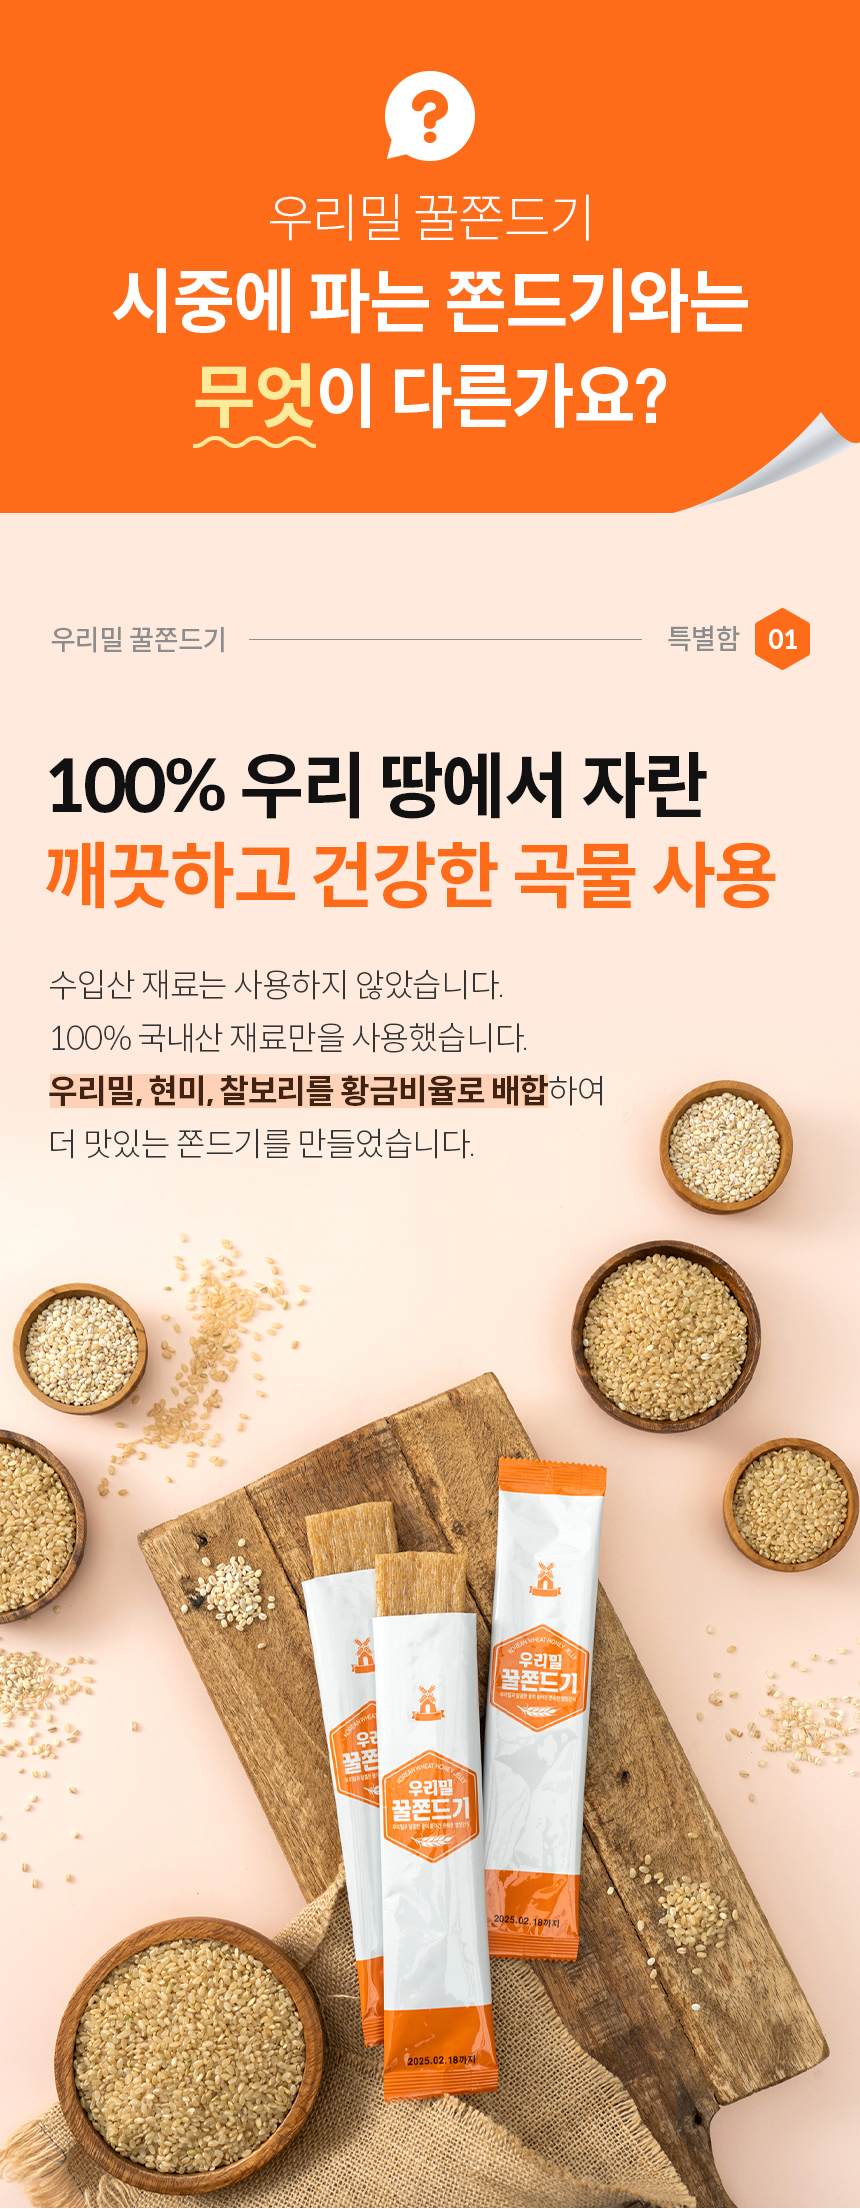 [우리밀순천사업소] 100%국내산 곡물 우리밀 꿀 쫀드기 125g